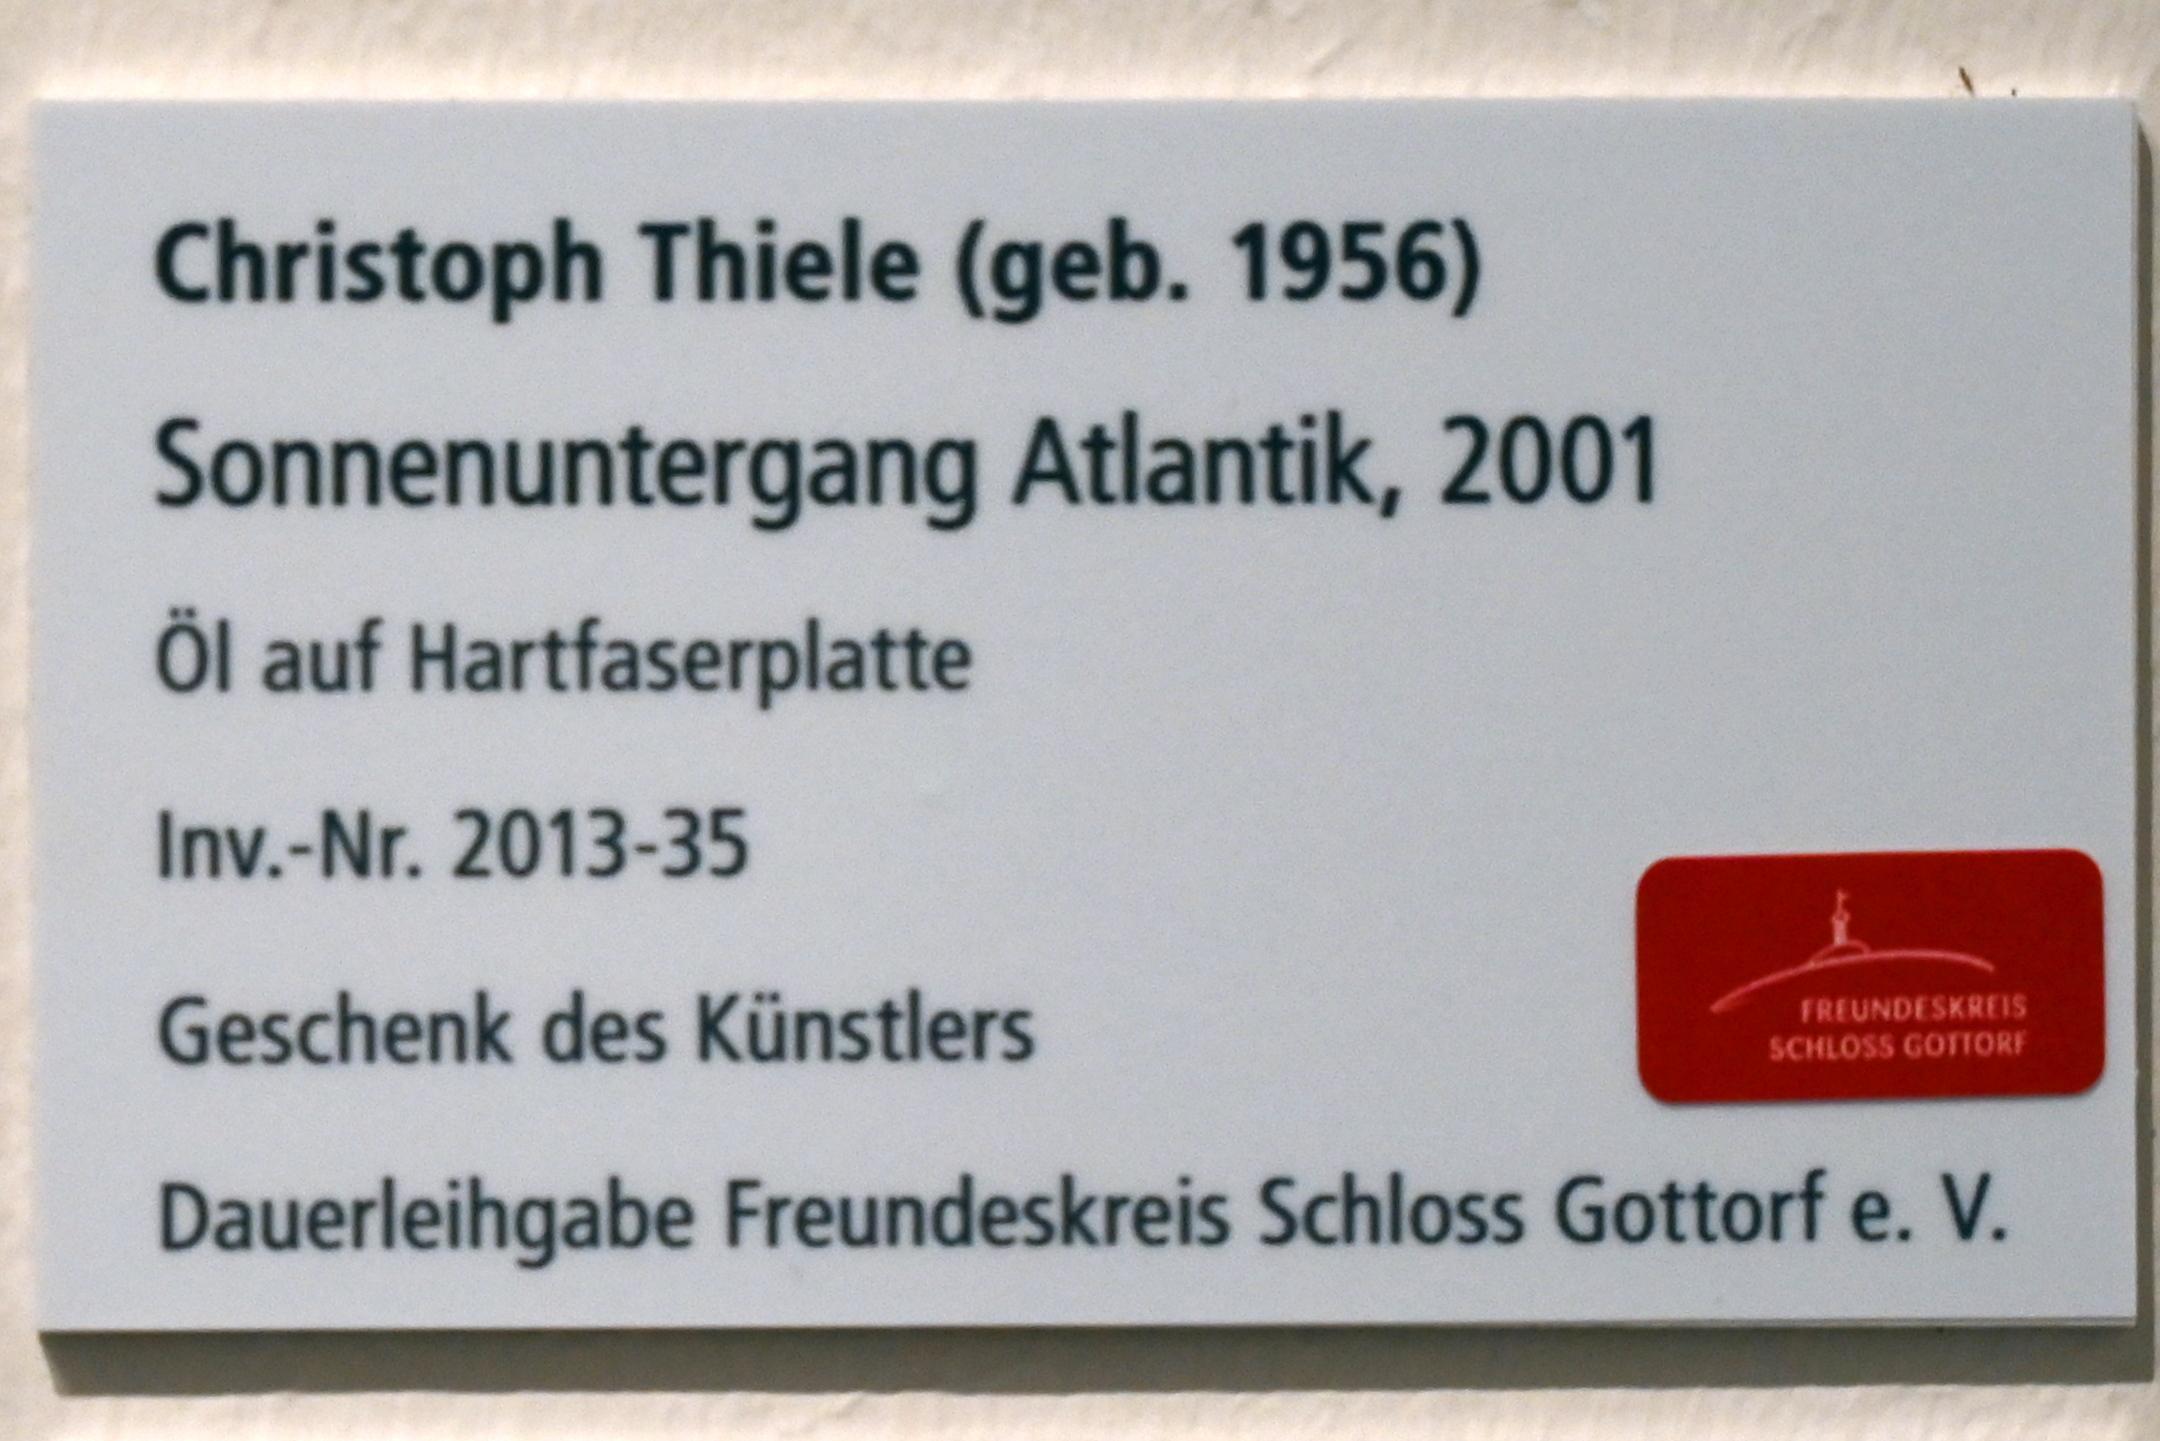 Christoph Thiele (2001), Sonnenuntergang Atlantik, Schleswig, Landesmuseum für Kunst und Kulturgeschichte, Galerie der Klassischen Moderne, 2001, Bild 2/2